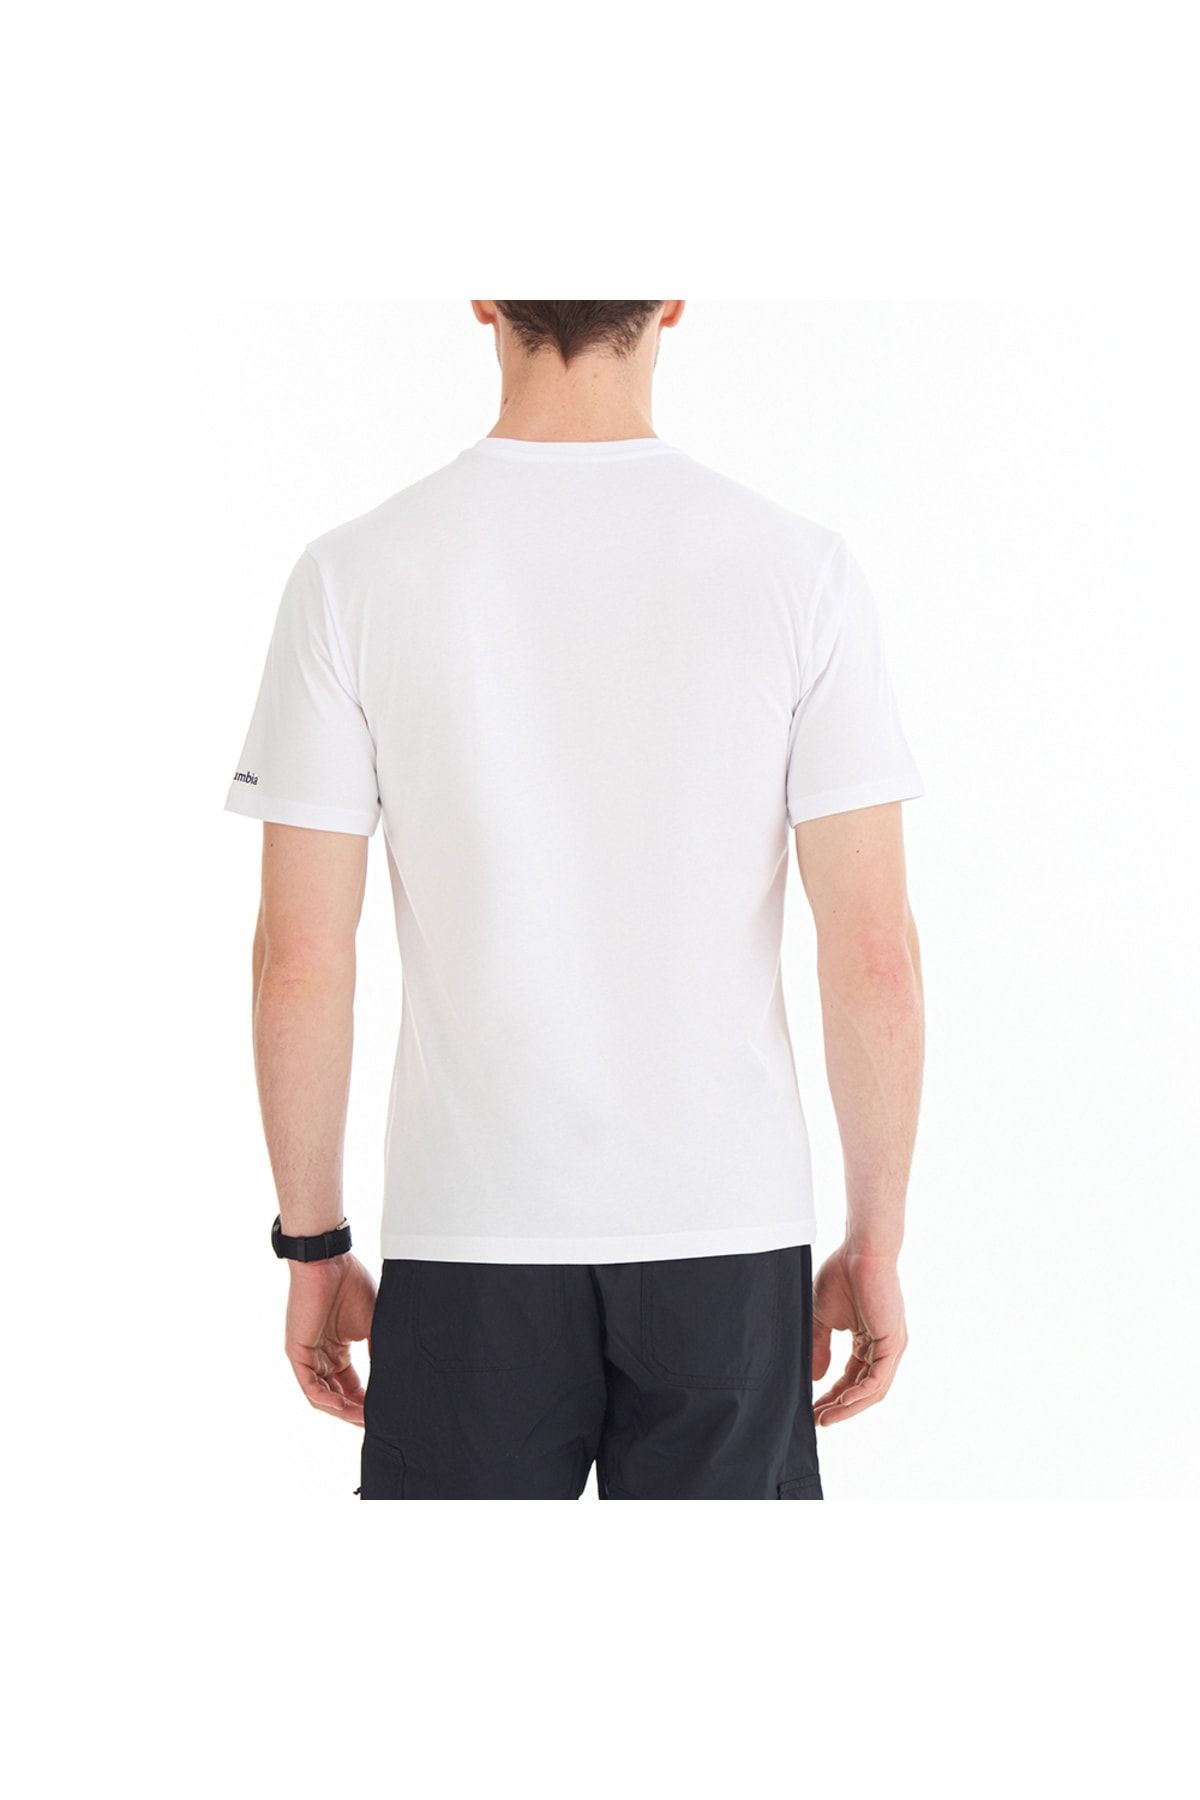 Columbia White Men's T-Shirt (Model Code: 9120461100) - Trendyol